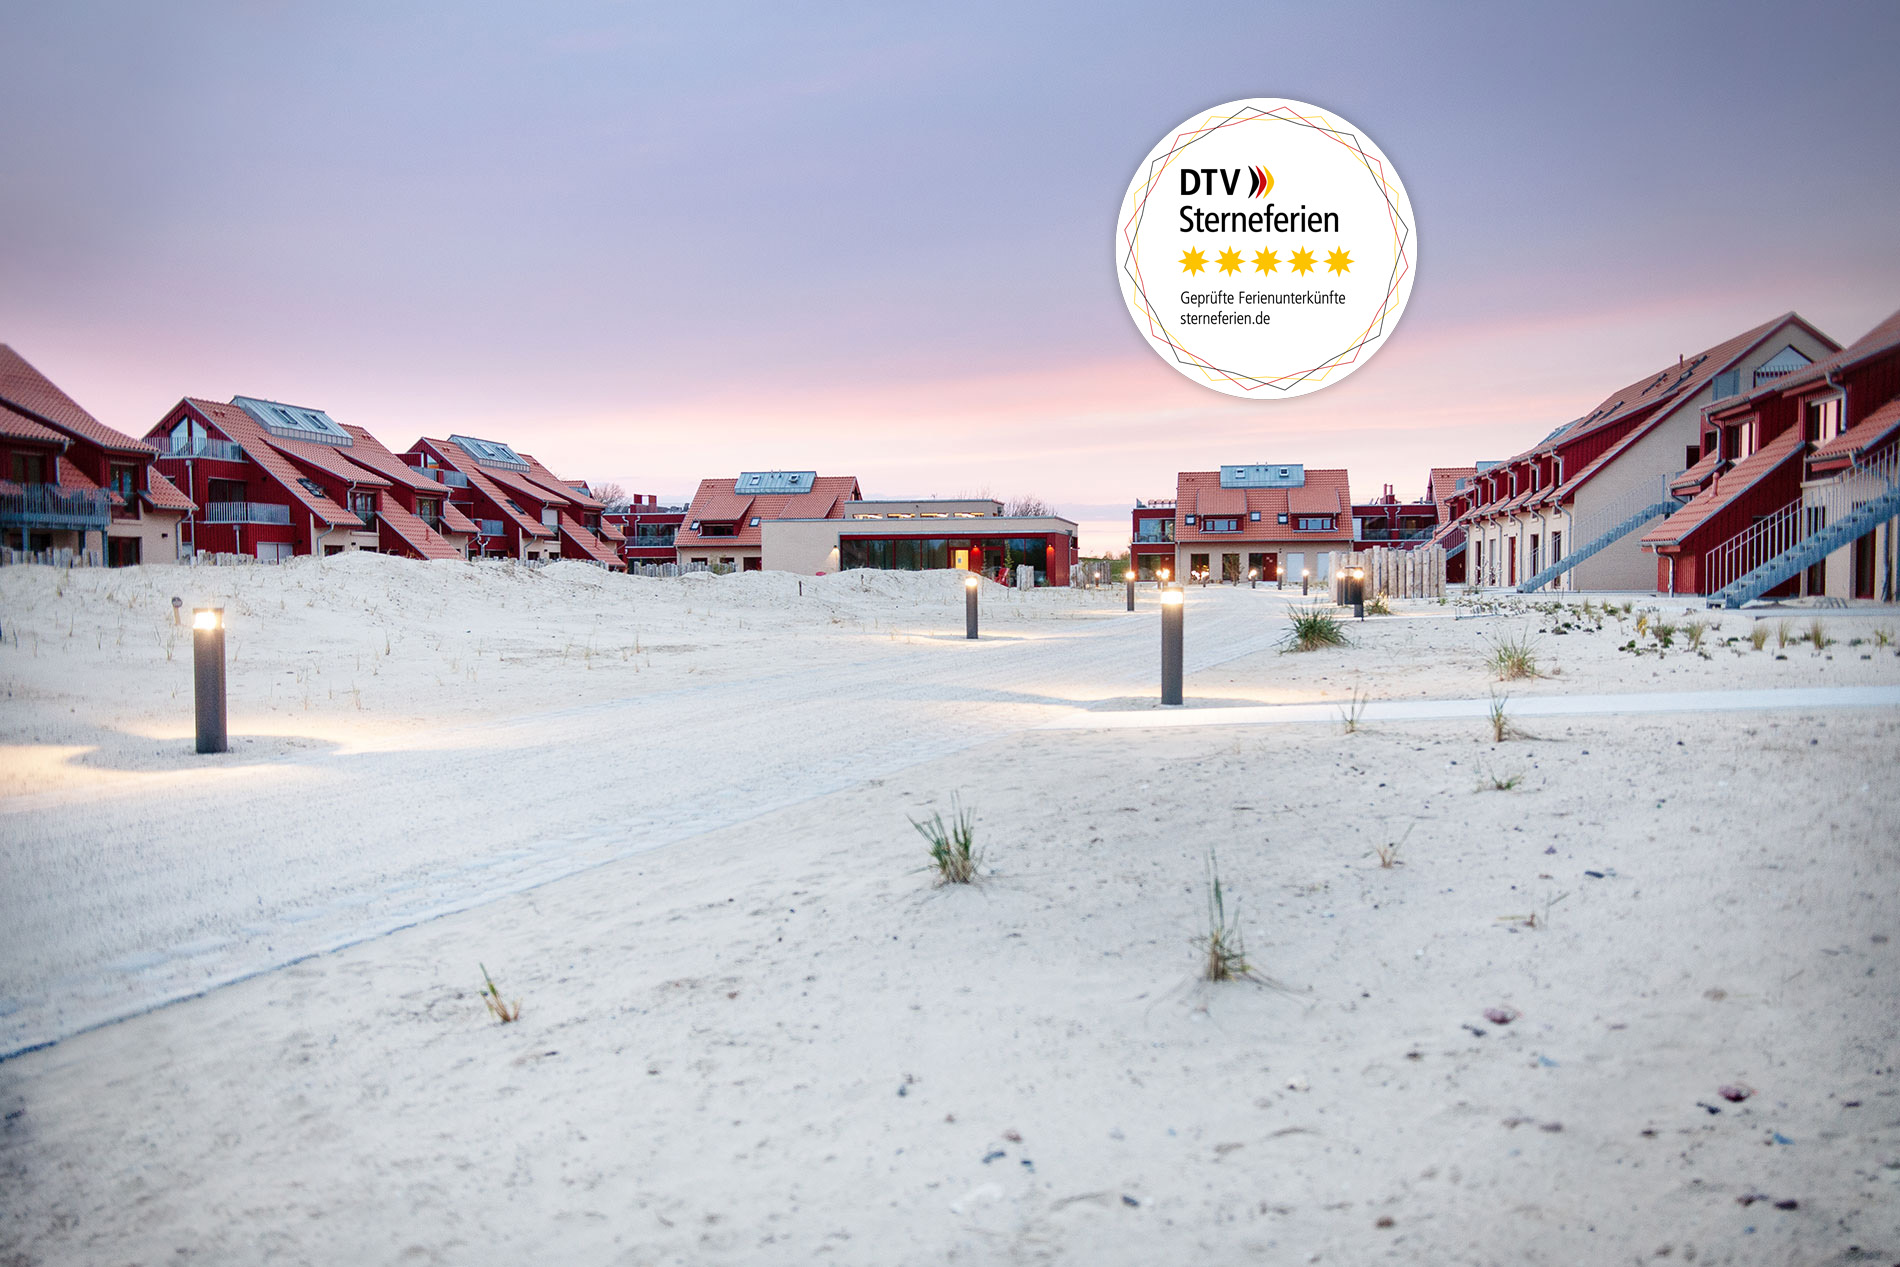 Ausgezeichnetes Ferienzuhause 5 Sterne für die Beach Apartments des Ferienimmobilien-Resorts Bades Huk